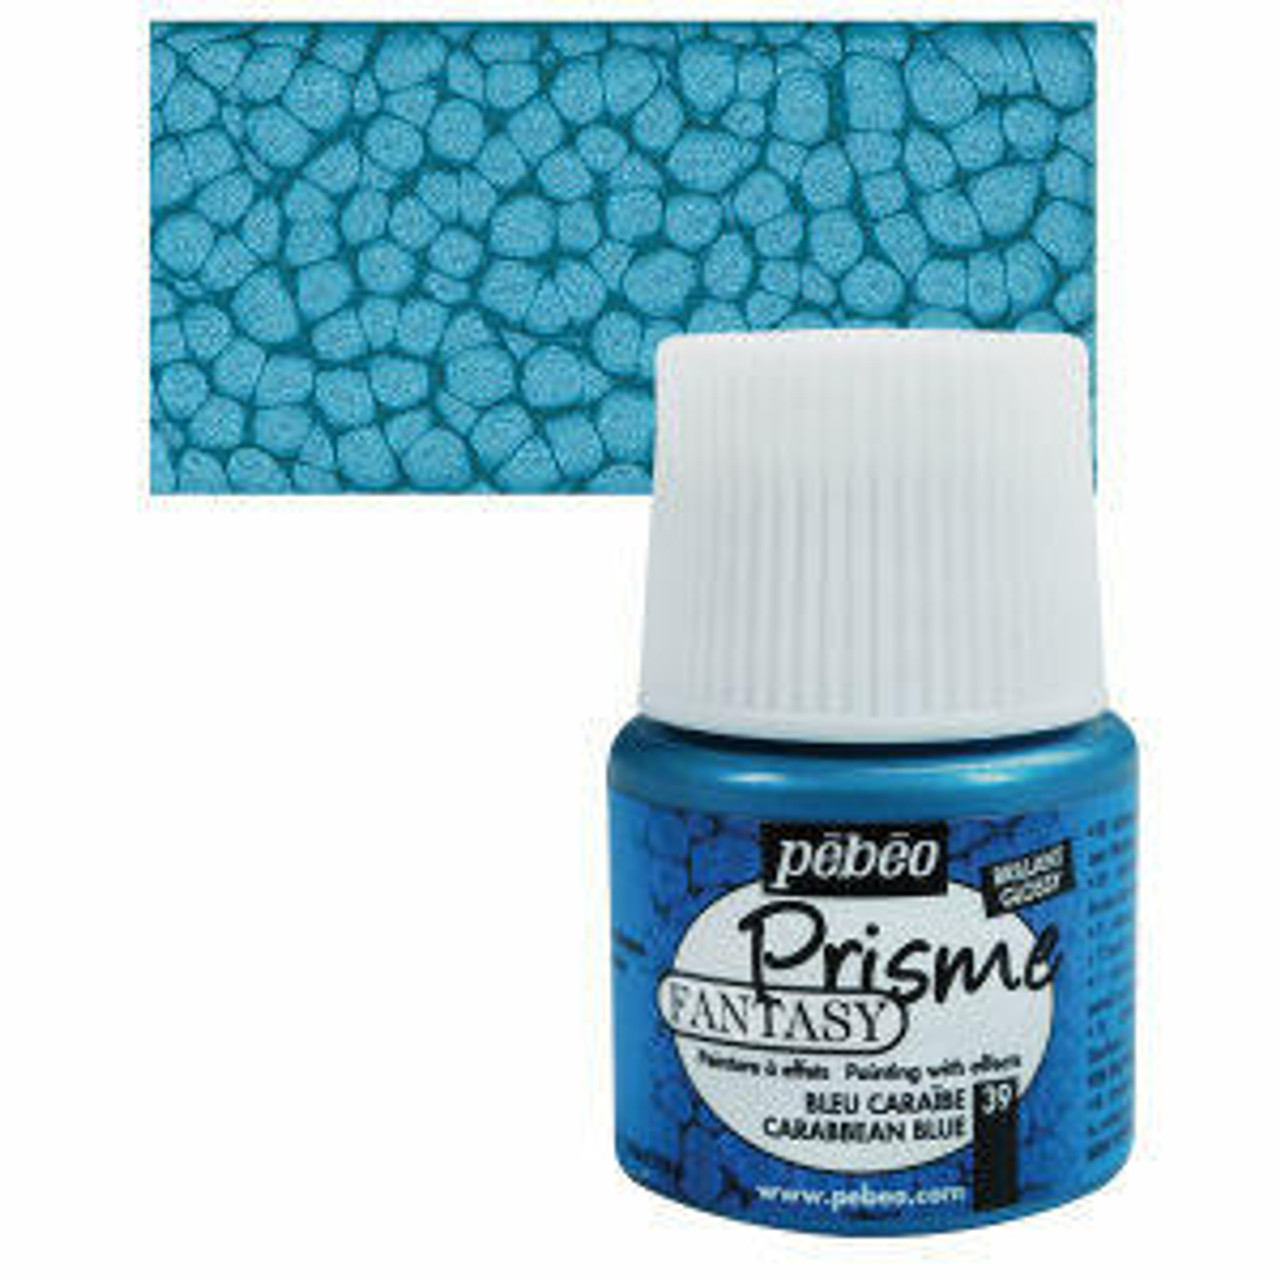 Pebeo Fantasy Prisme Paint 45ml Caribbean Blue